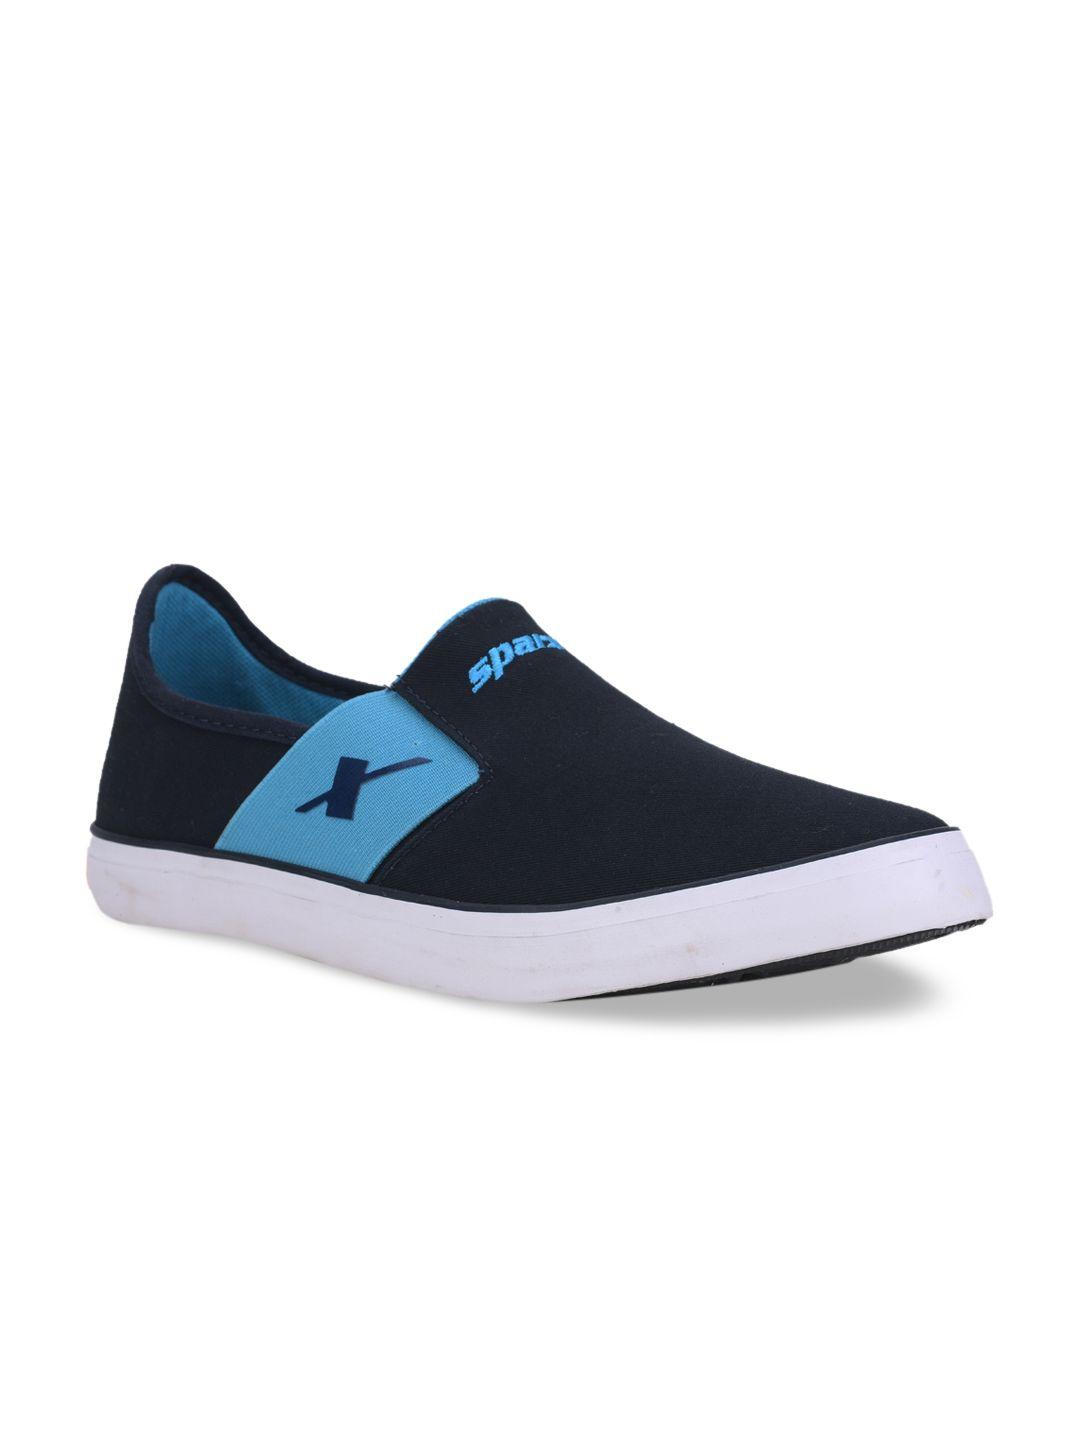 sparx men navy blue slip-on sneakers